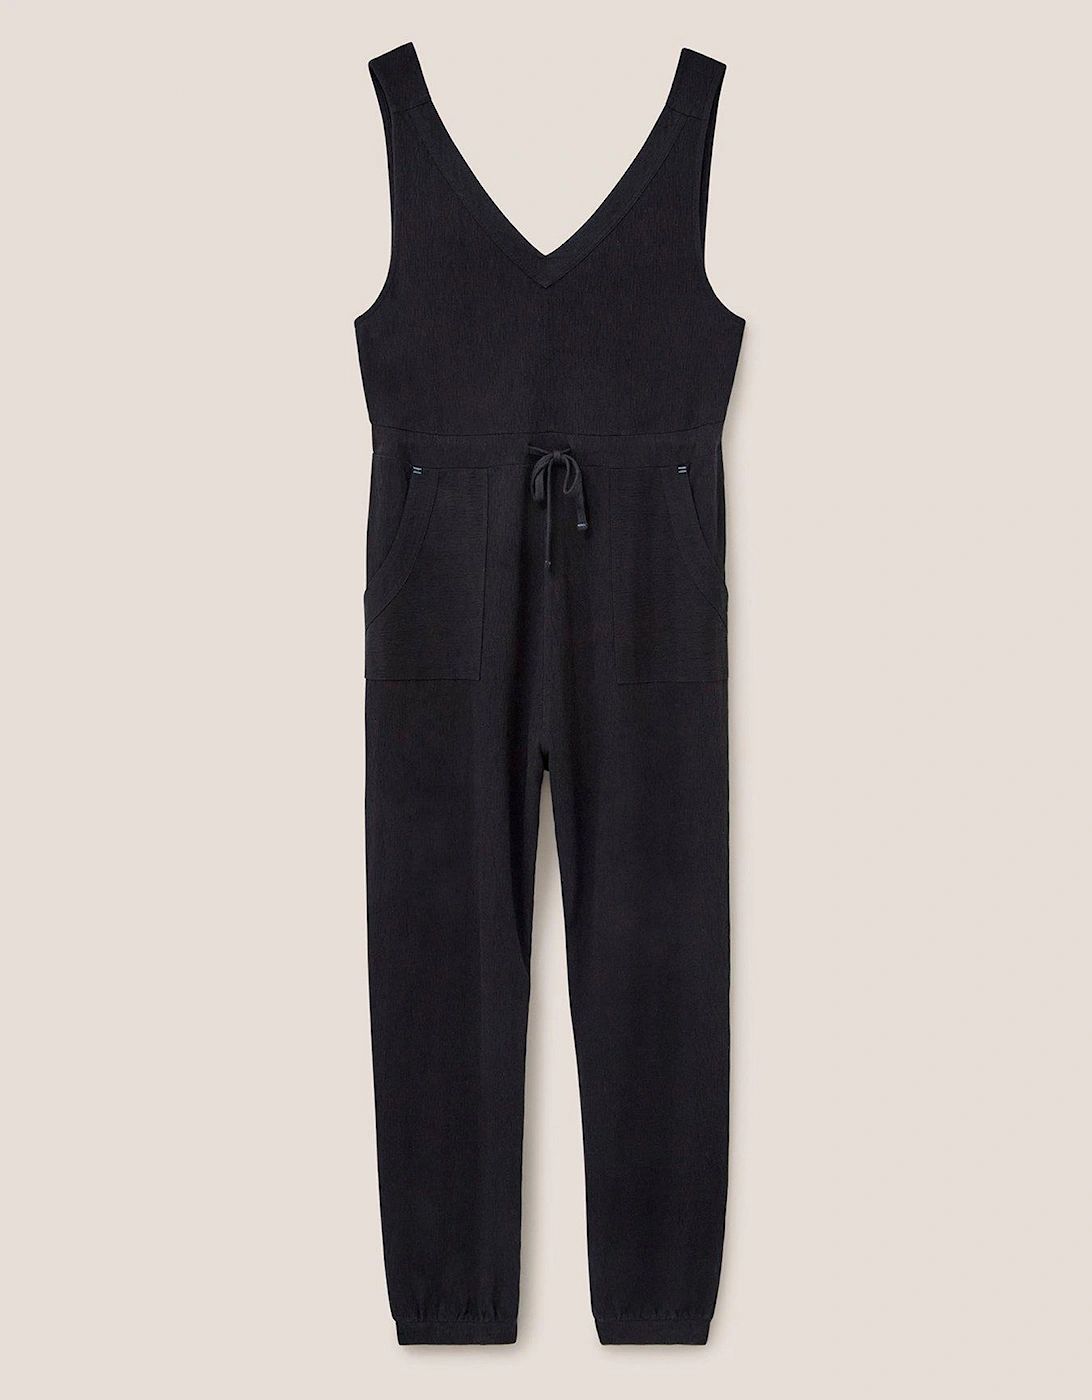 Lainey Jersey Jumpsuit - Black, 2 of 1